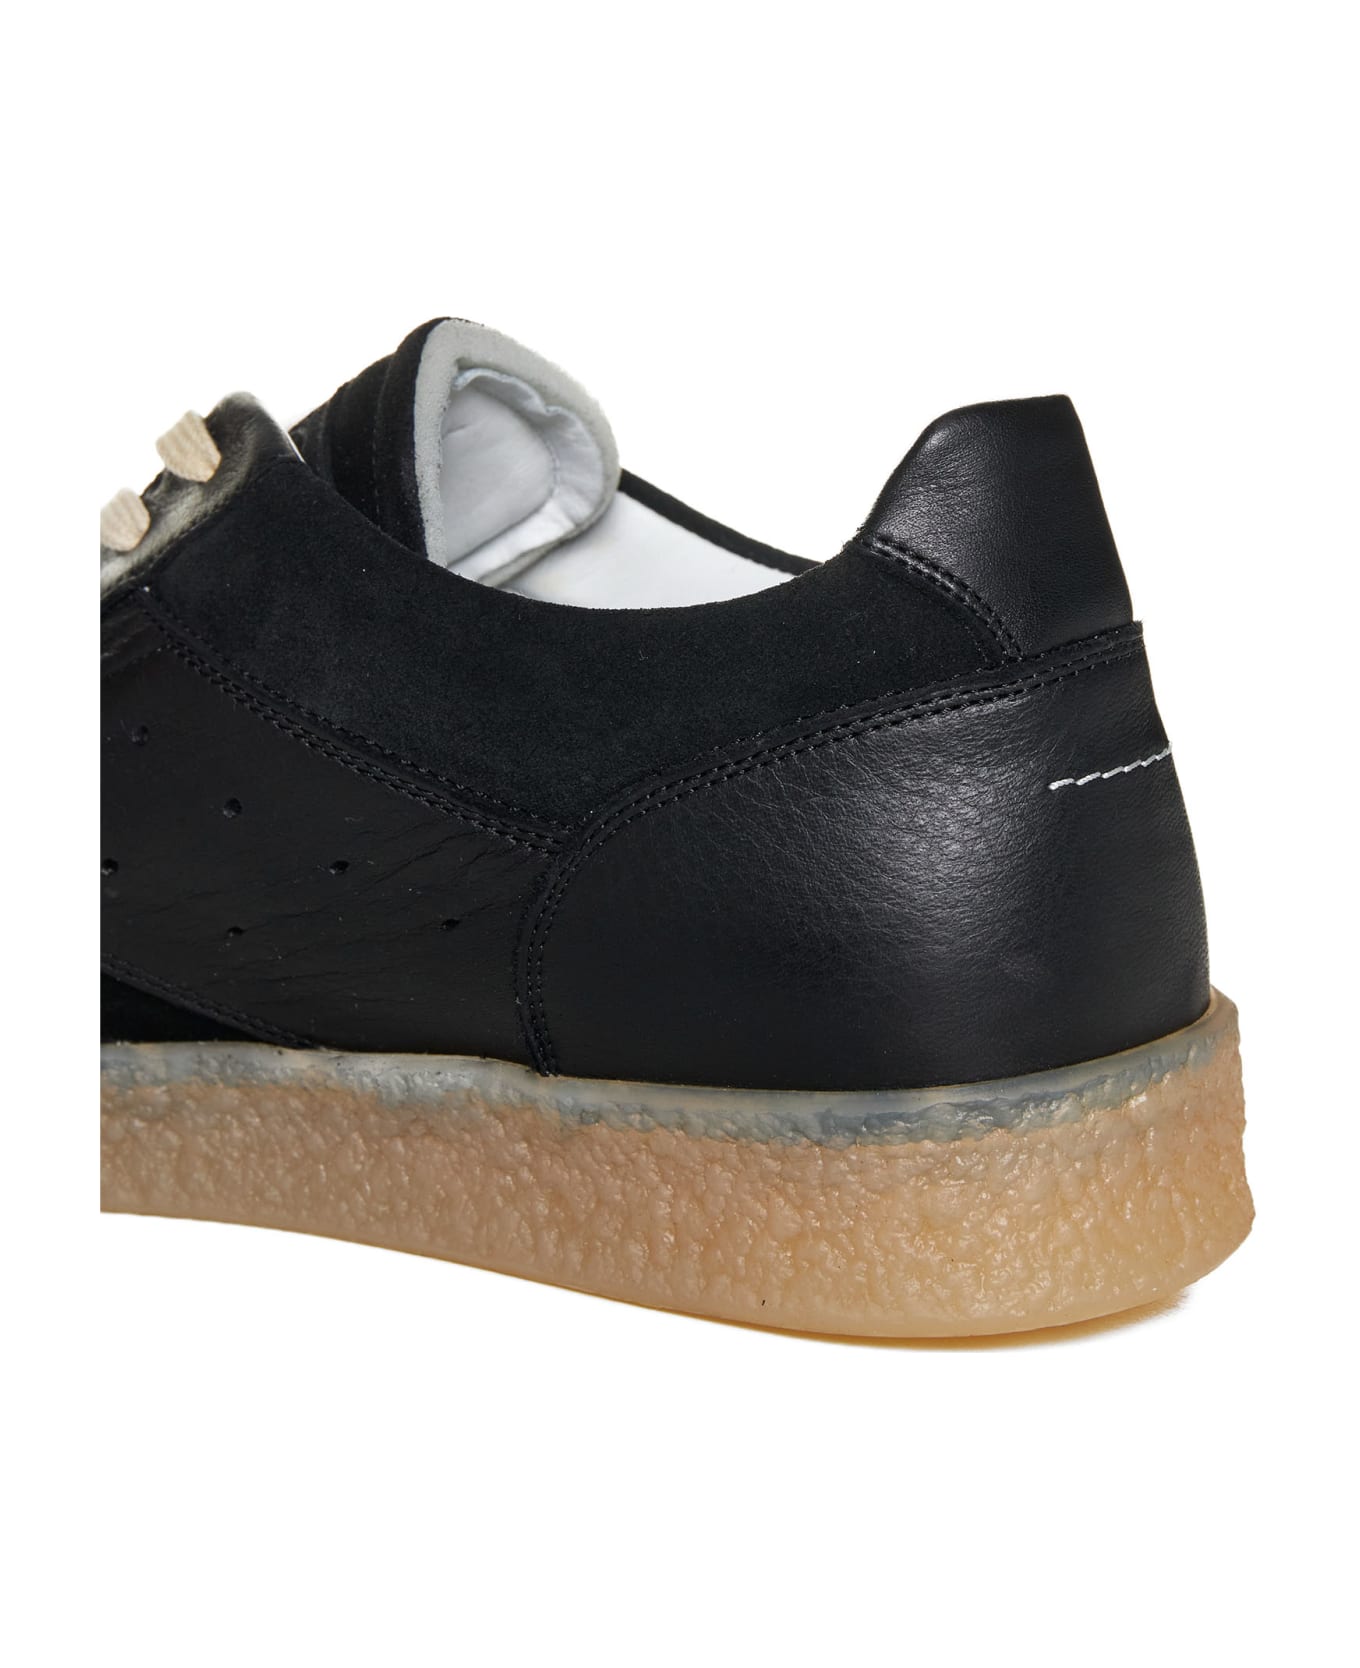 MM6 Maison Margiela 6 Court Sneakers - Black スニーカー